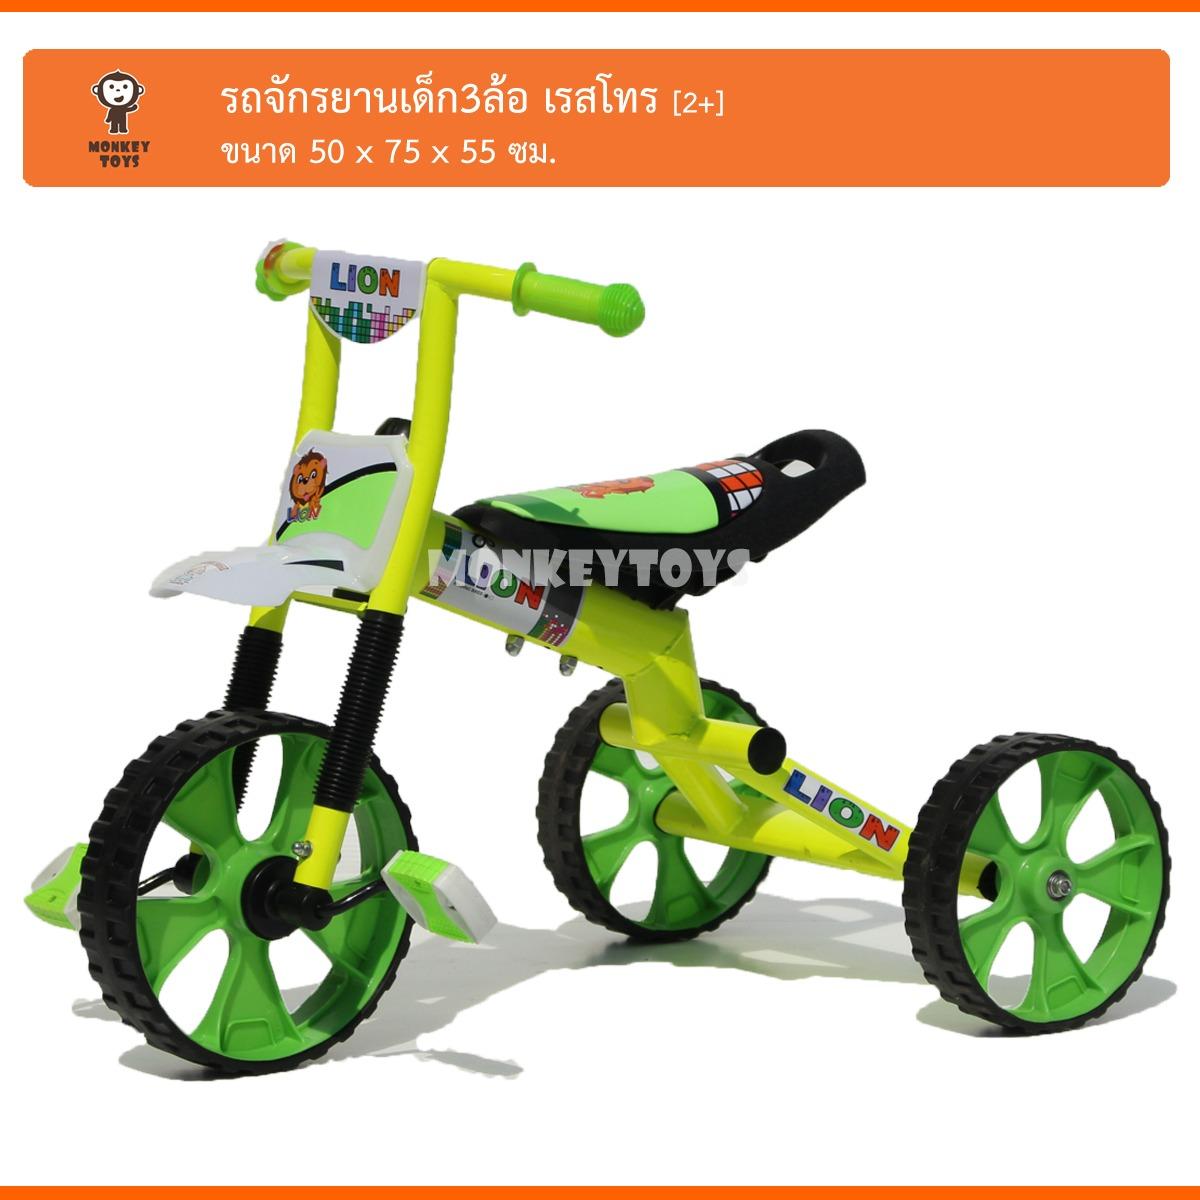 Monkey Toys รถจักรยานเด็ก 3ล้อ เรสโทร 0912